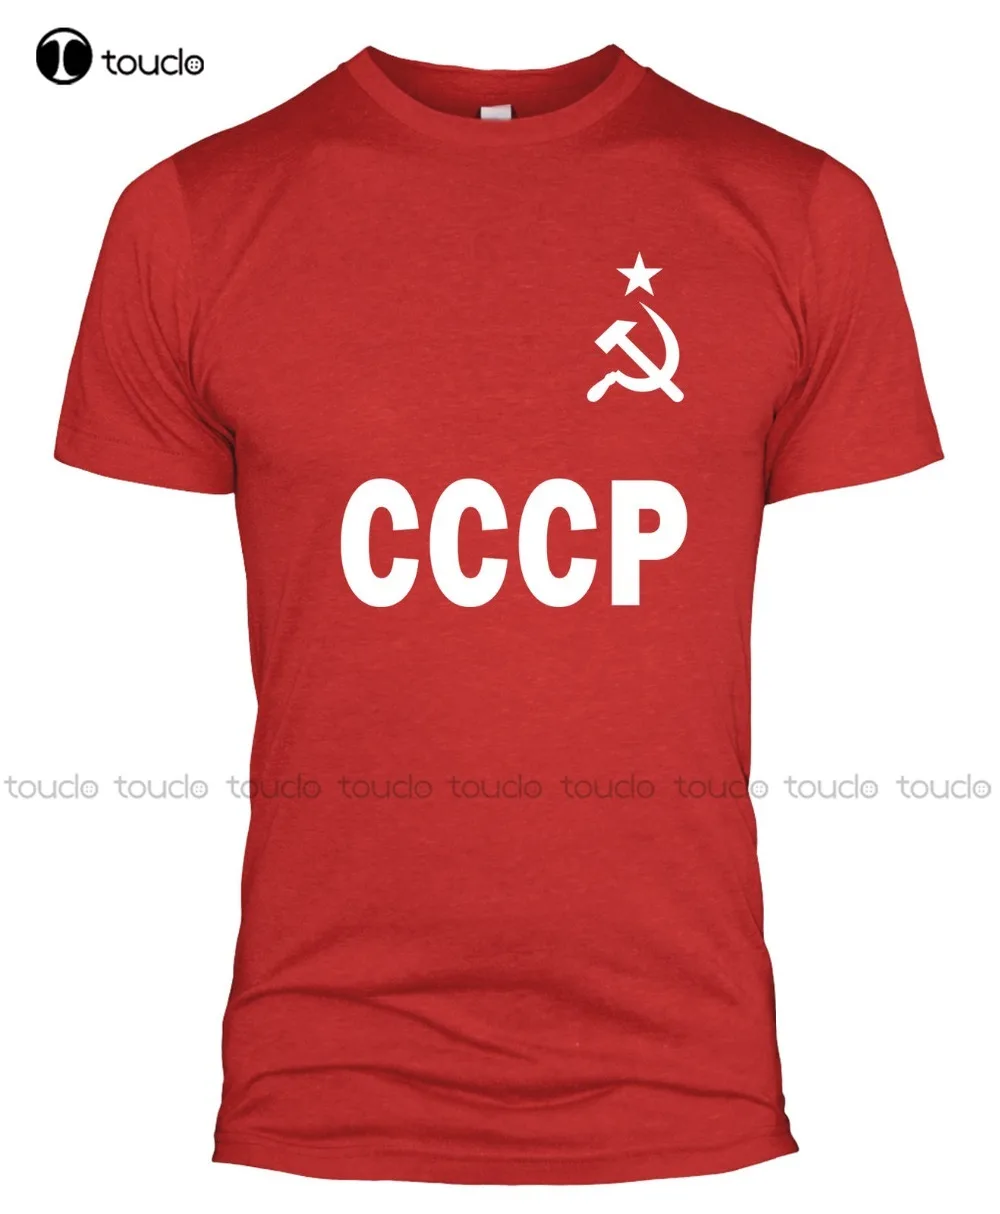 Фото Новый бренд дешевая распродажа 100% хлопок Cccp Советский Союз ретро футболка для